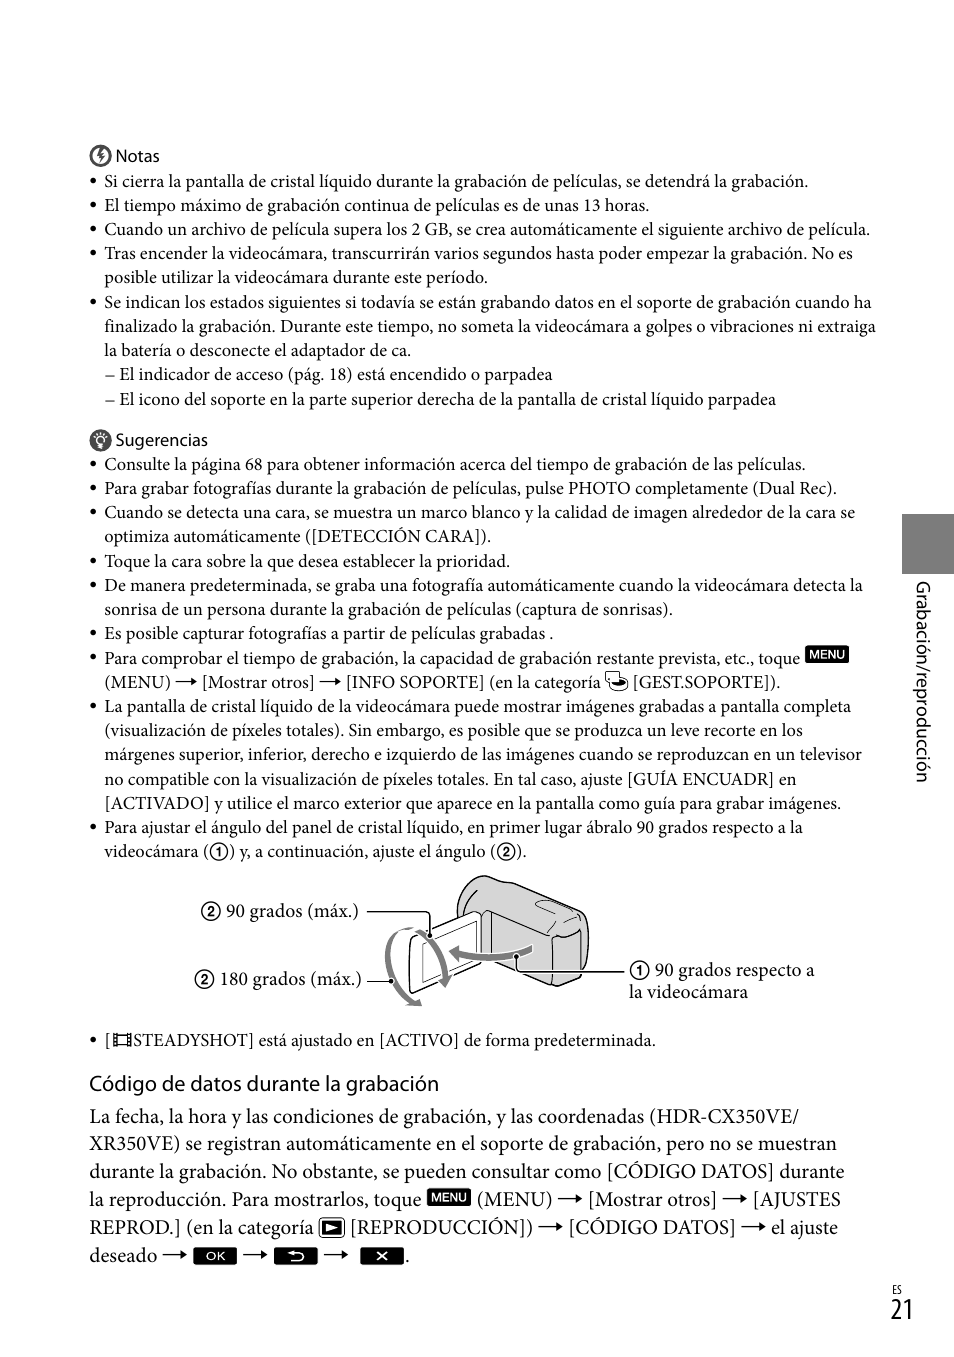 Código de datos durante la grabación | Sony HDR-CX305E Manual del usuario | Página 21 / 307